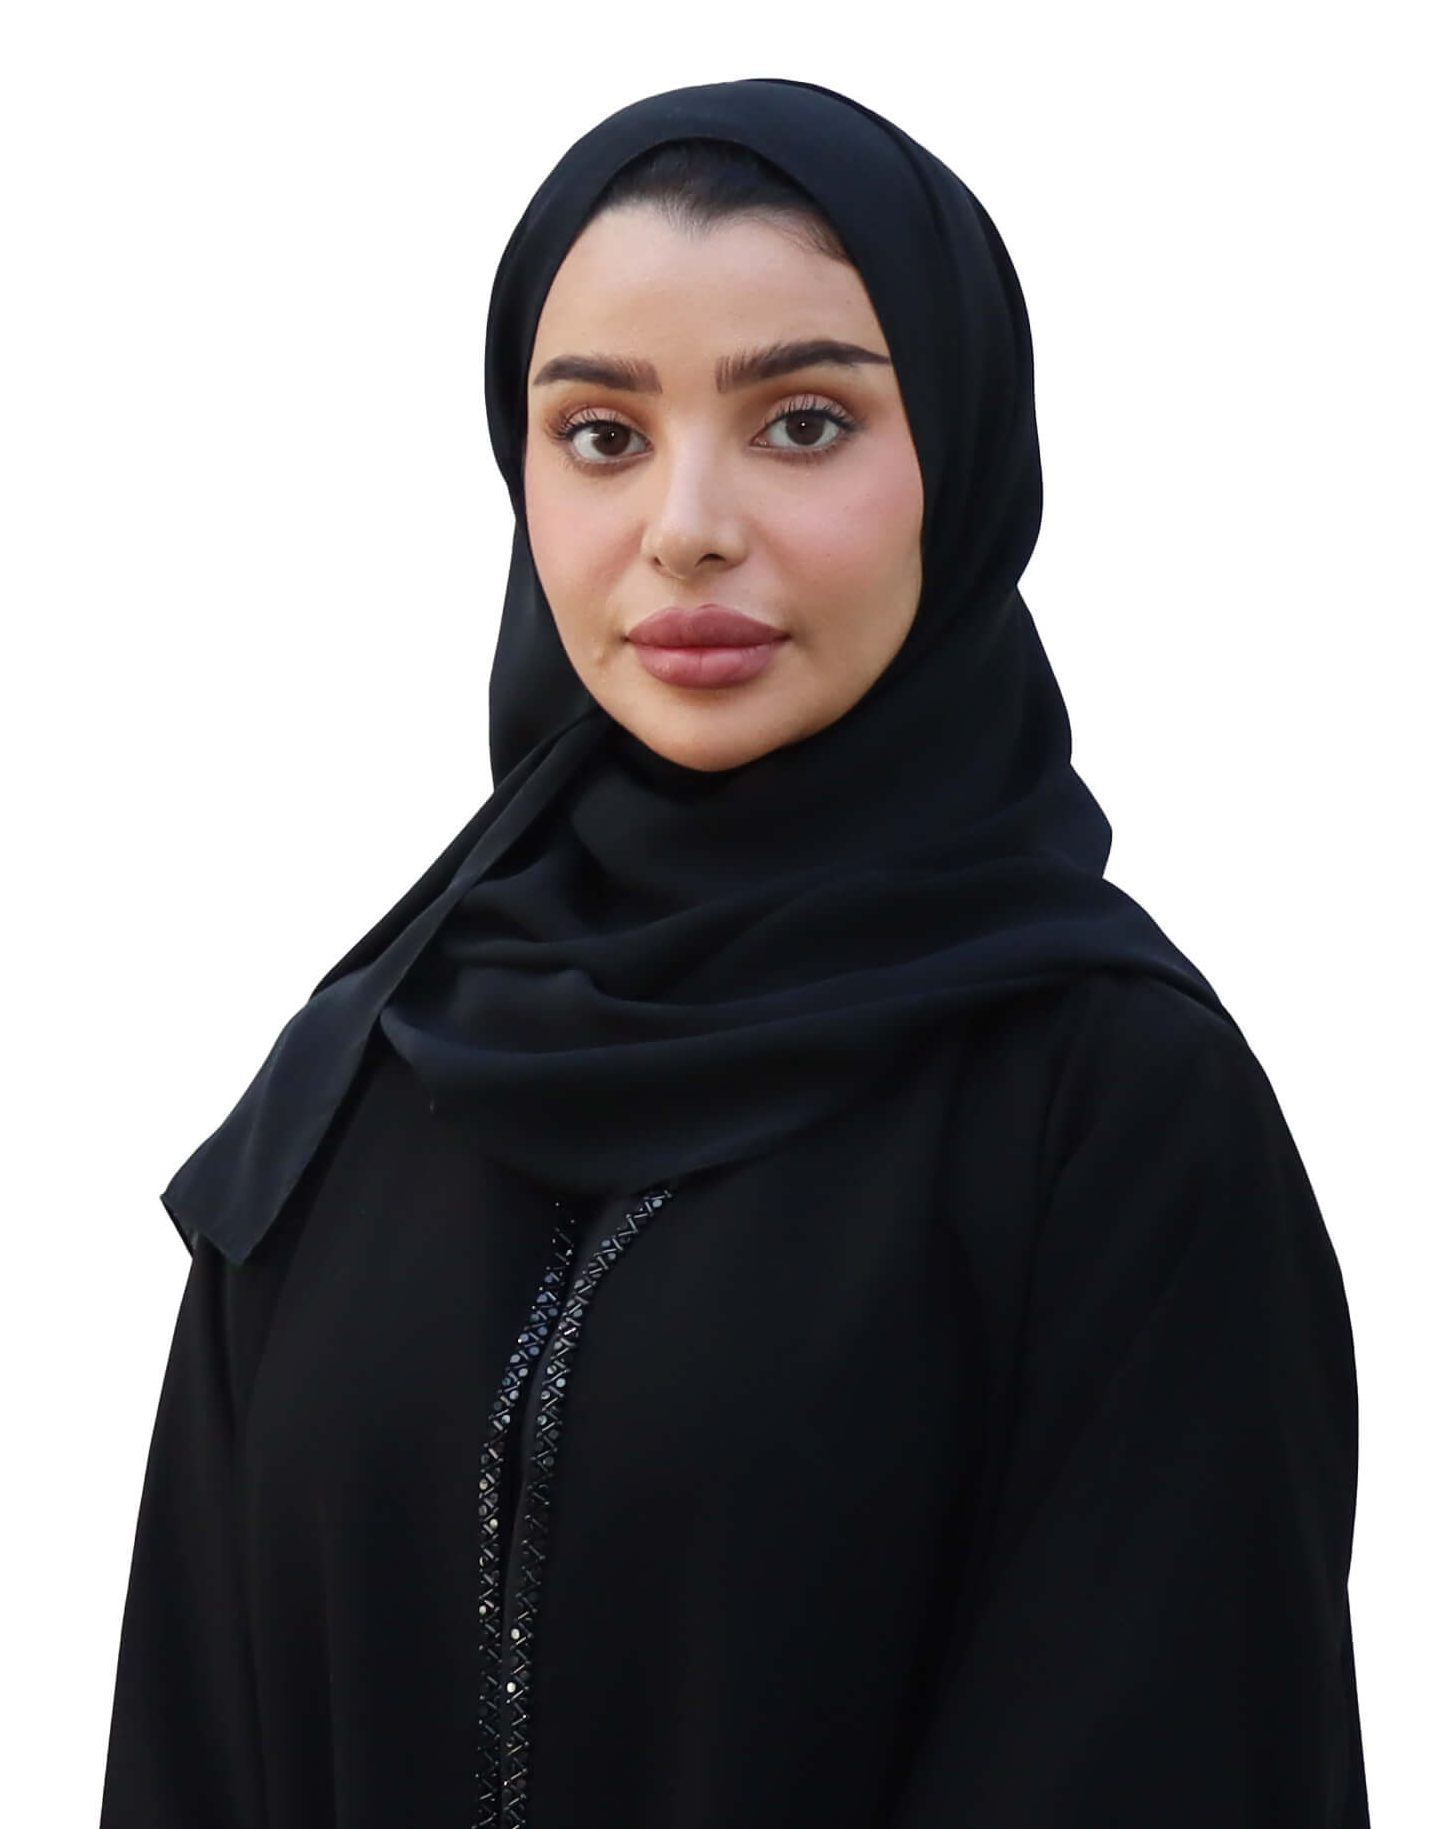 Dr. Lola Al Mubarak